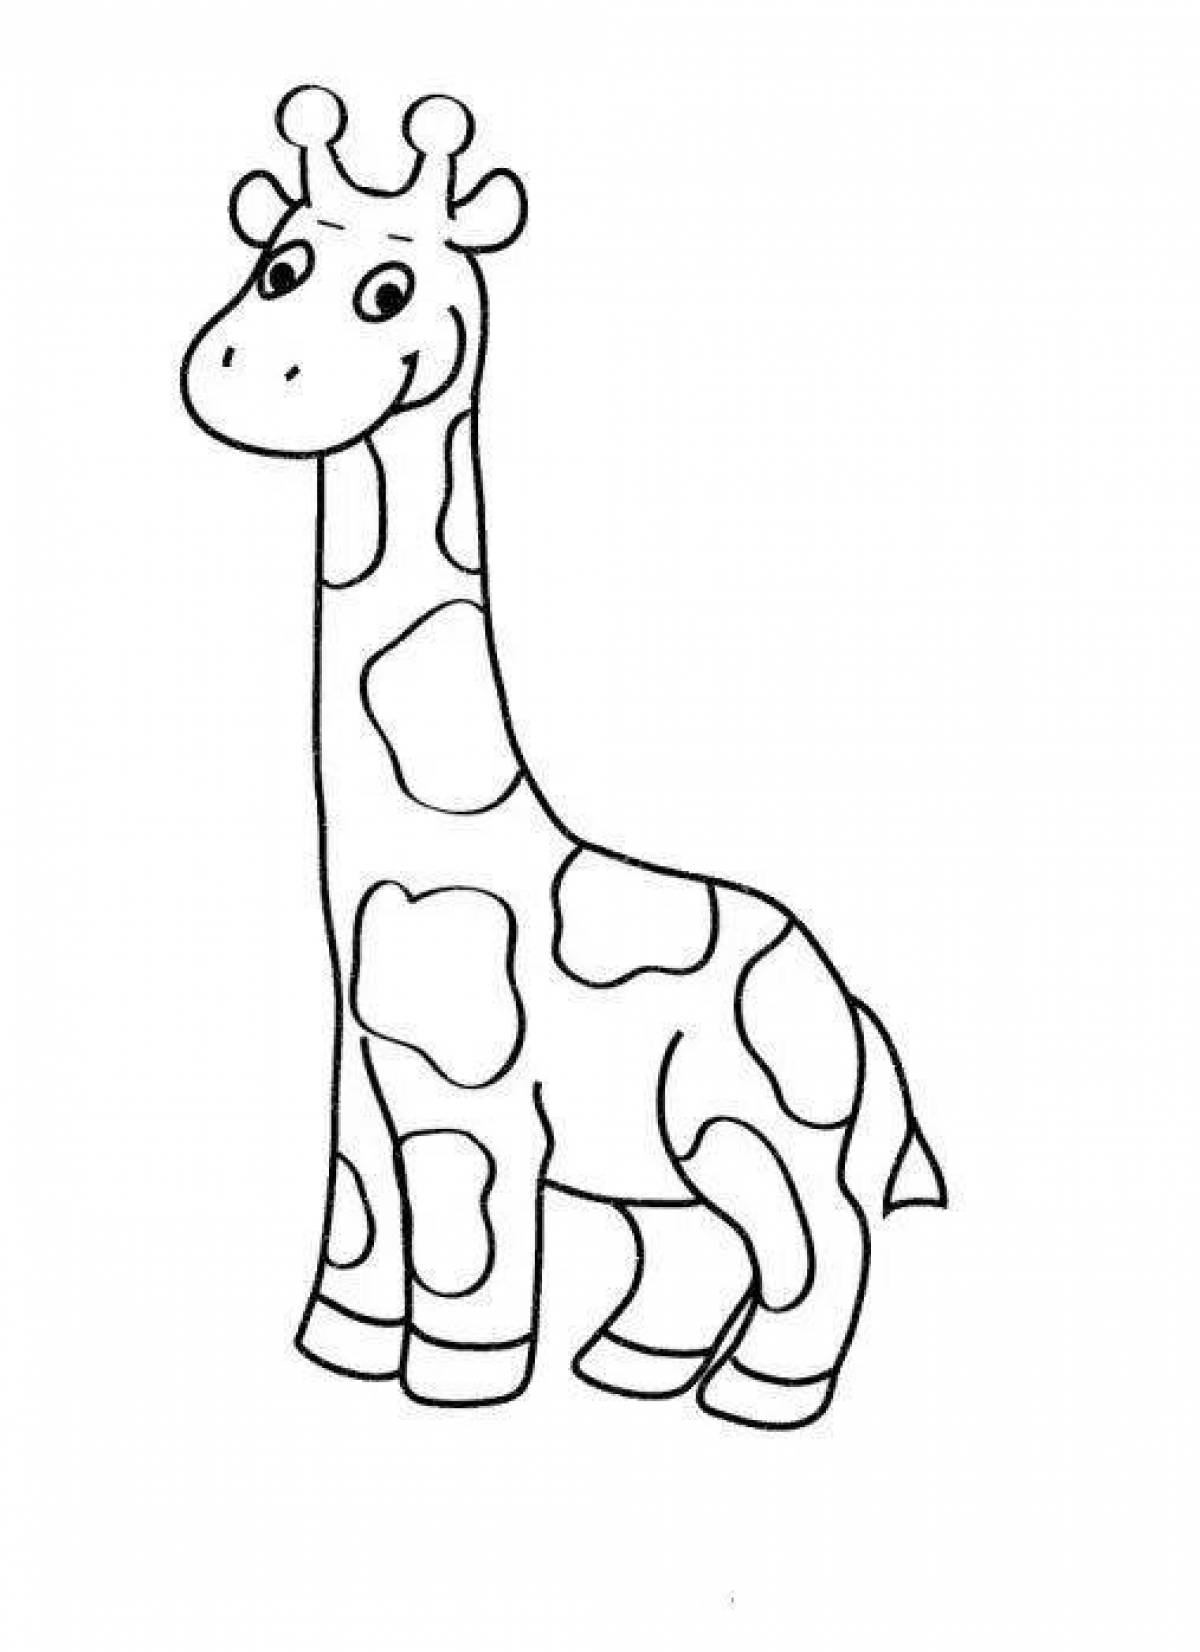 Буйный жираф раскраски для детей